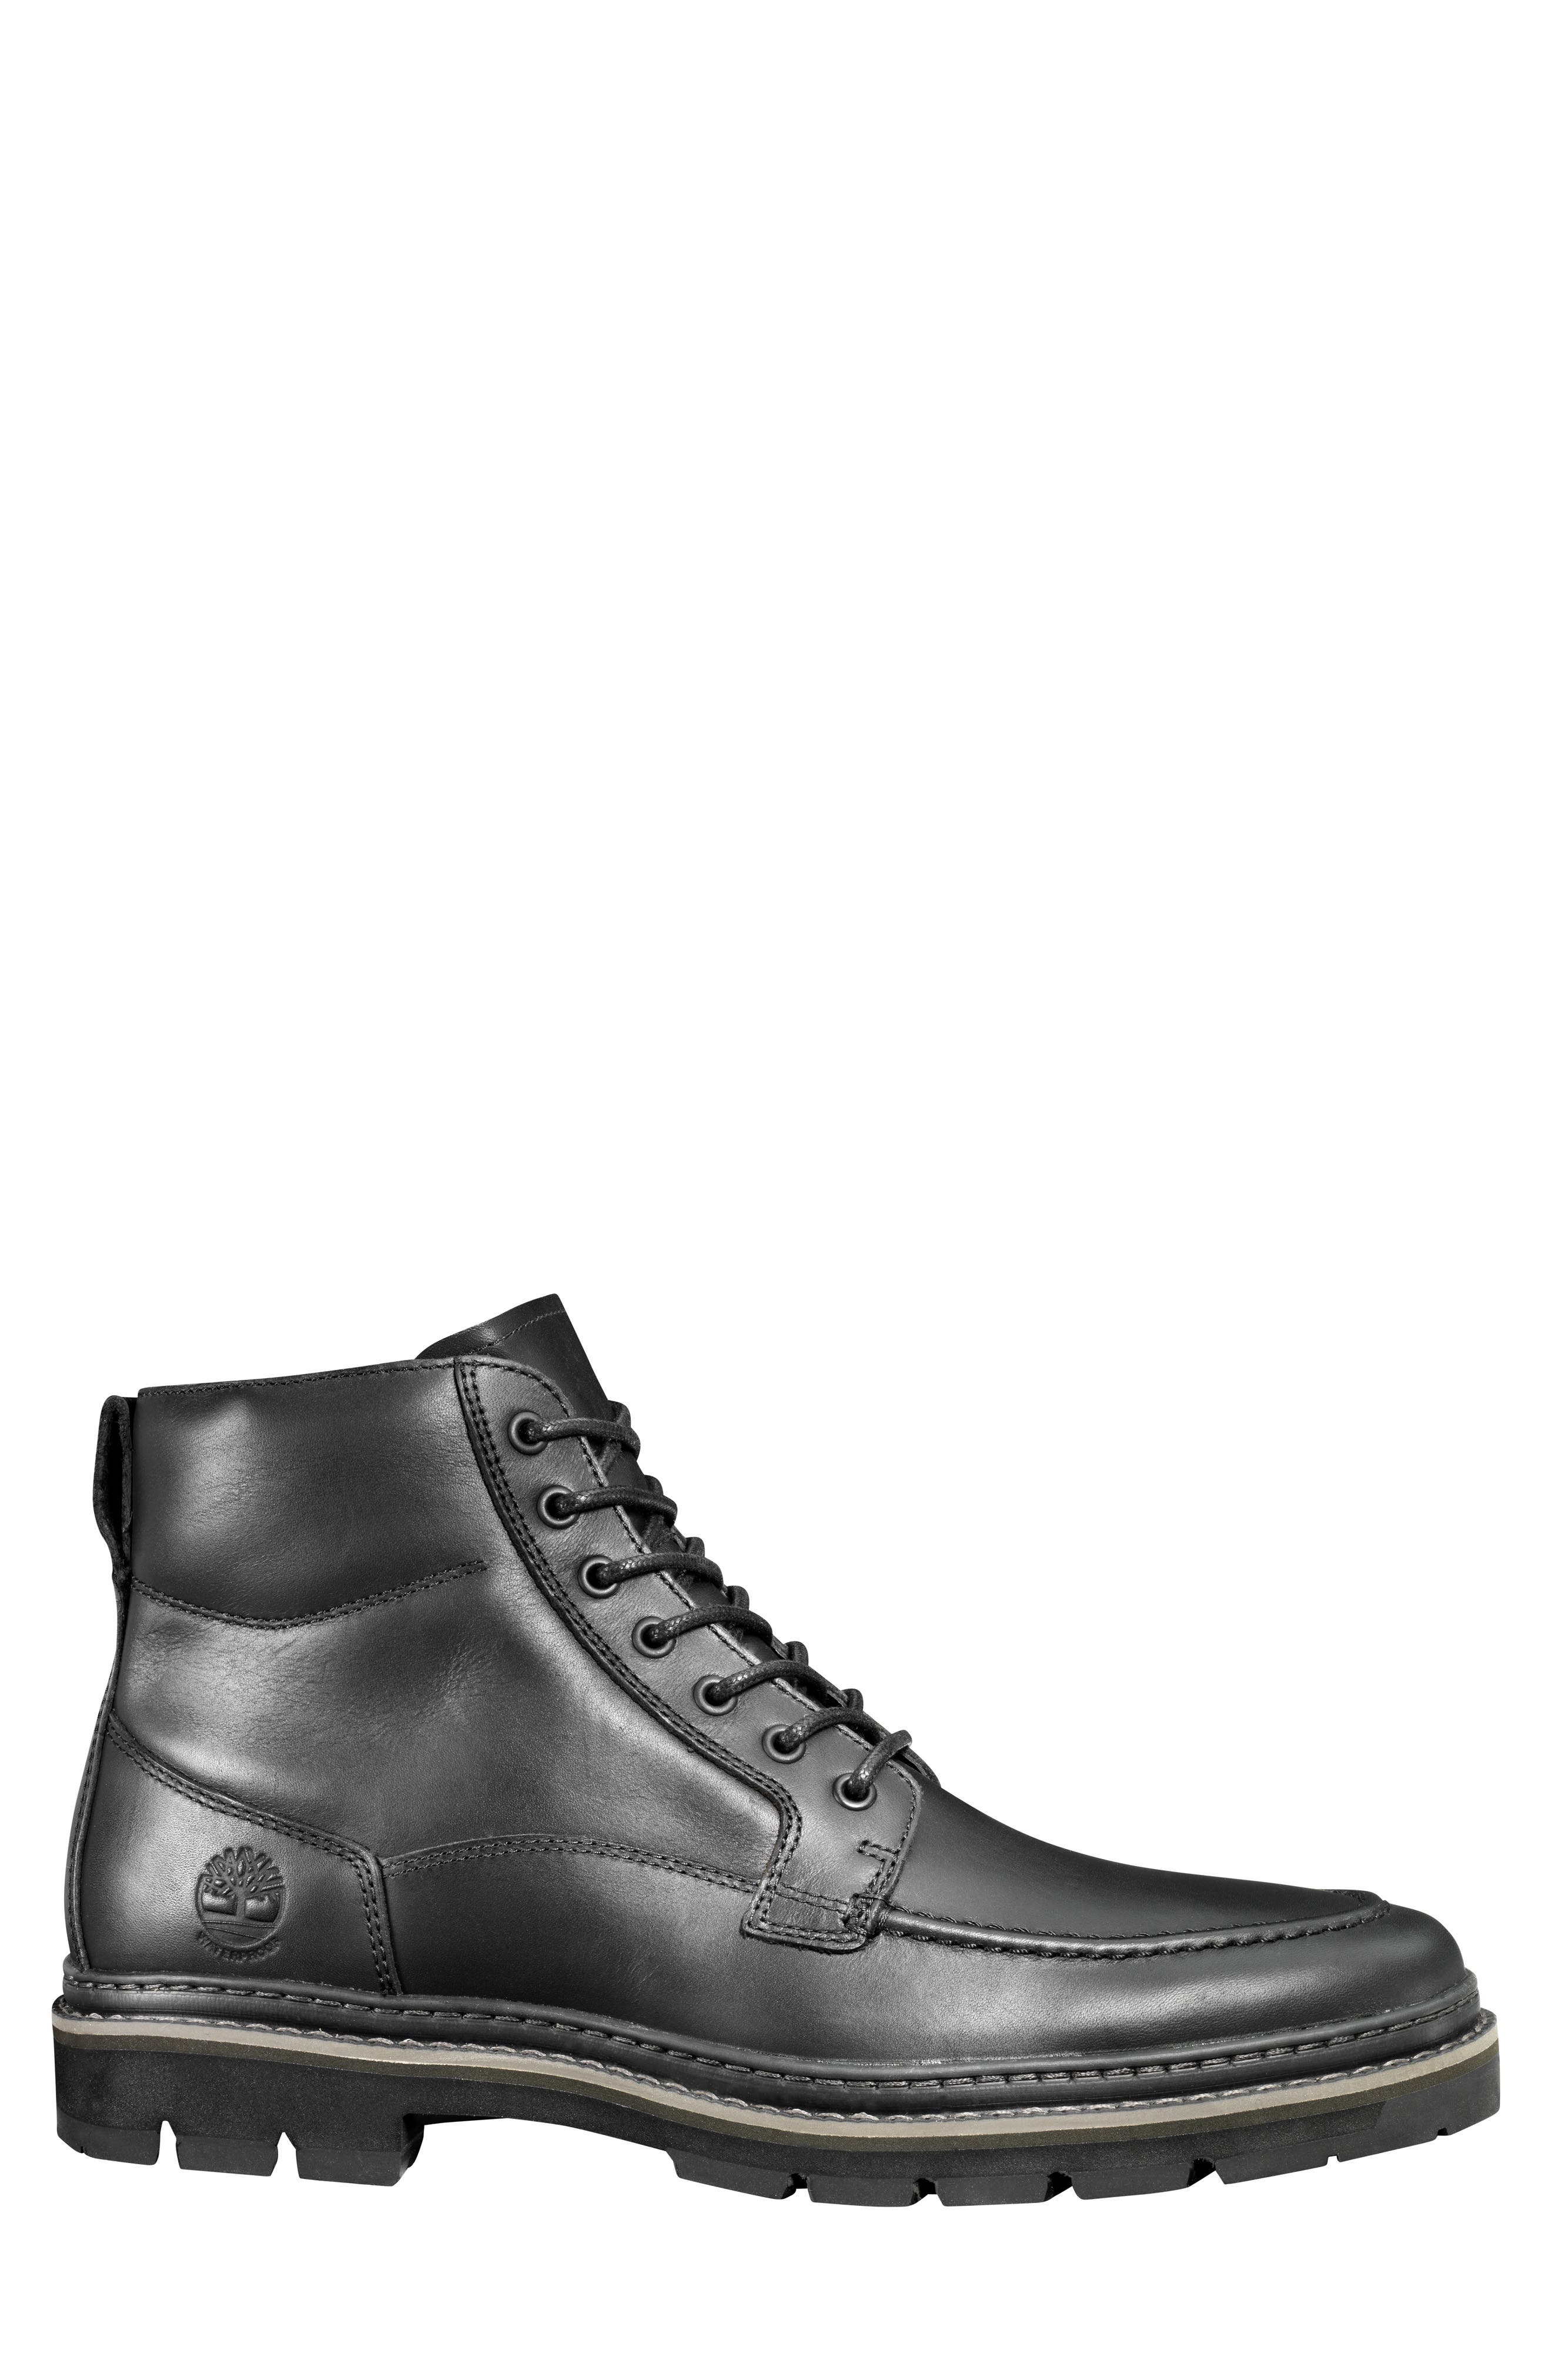 waterproof wide width boots